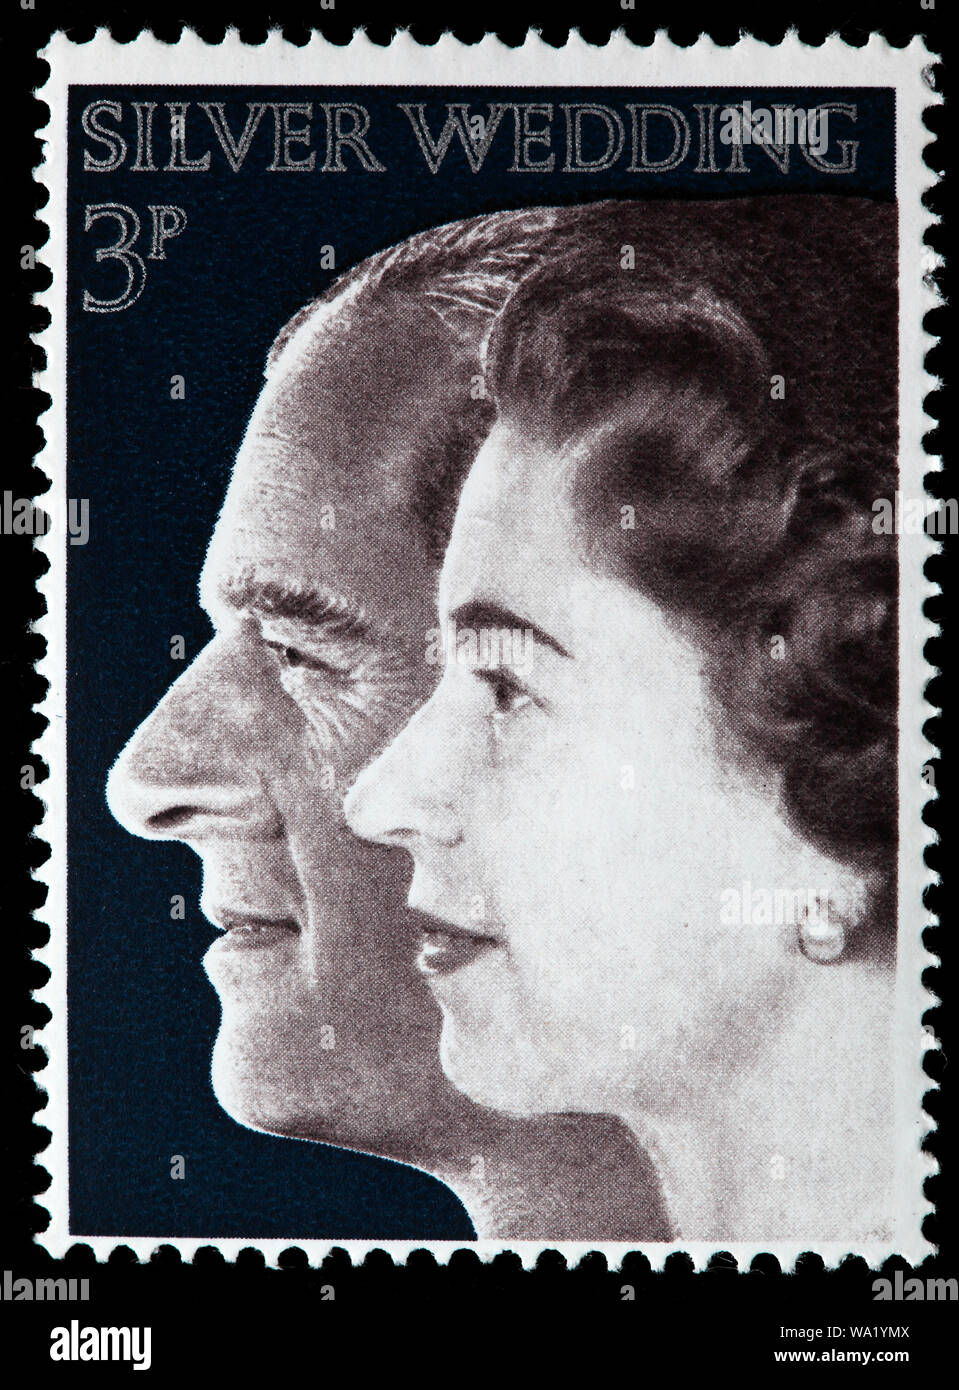 Königin Elizabeth II., Silberne Hochzeit, Briefmarke, UK, 1972 Stockfoto